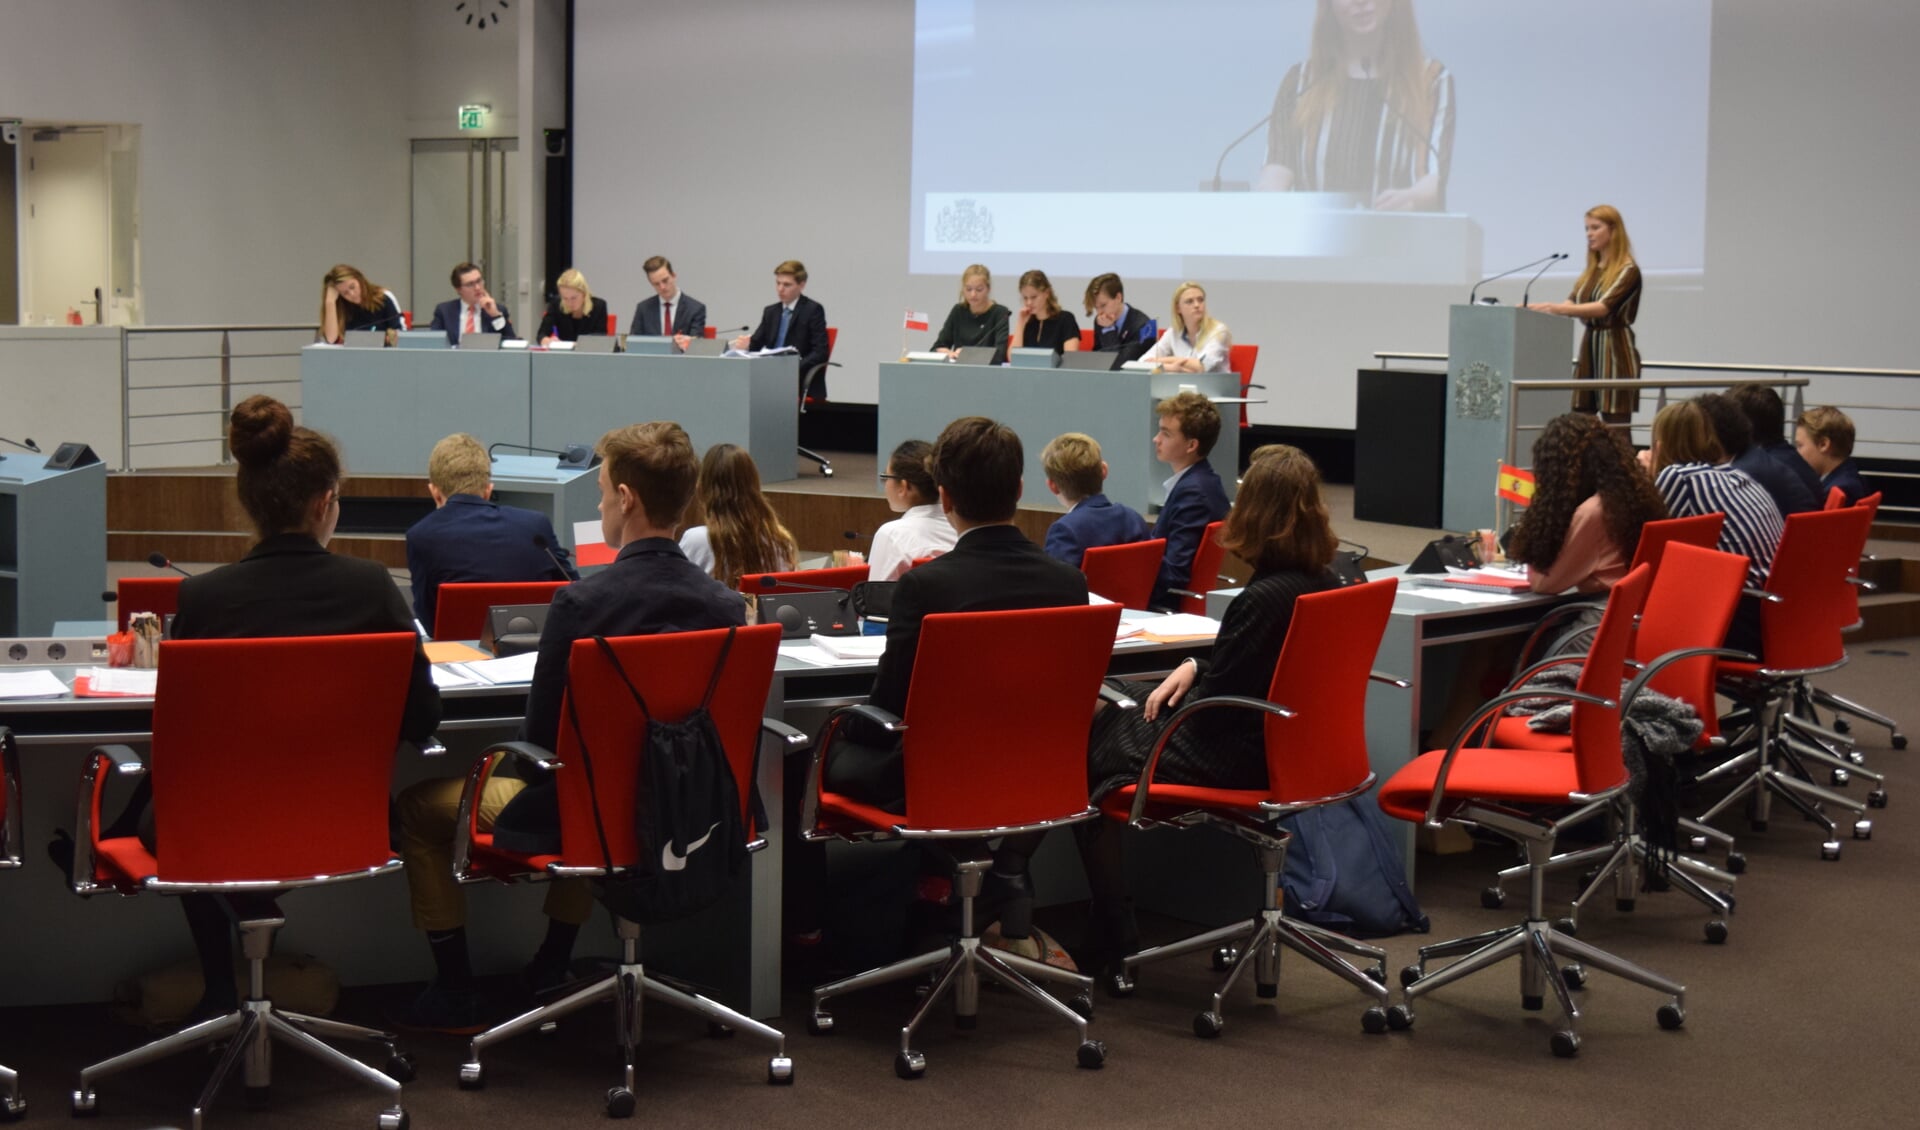 63 leerlingen uit de provincie Utrecht gaan met elkaar het debat aan. 